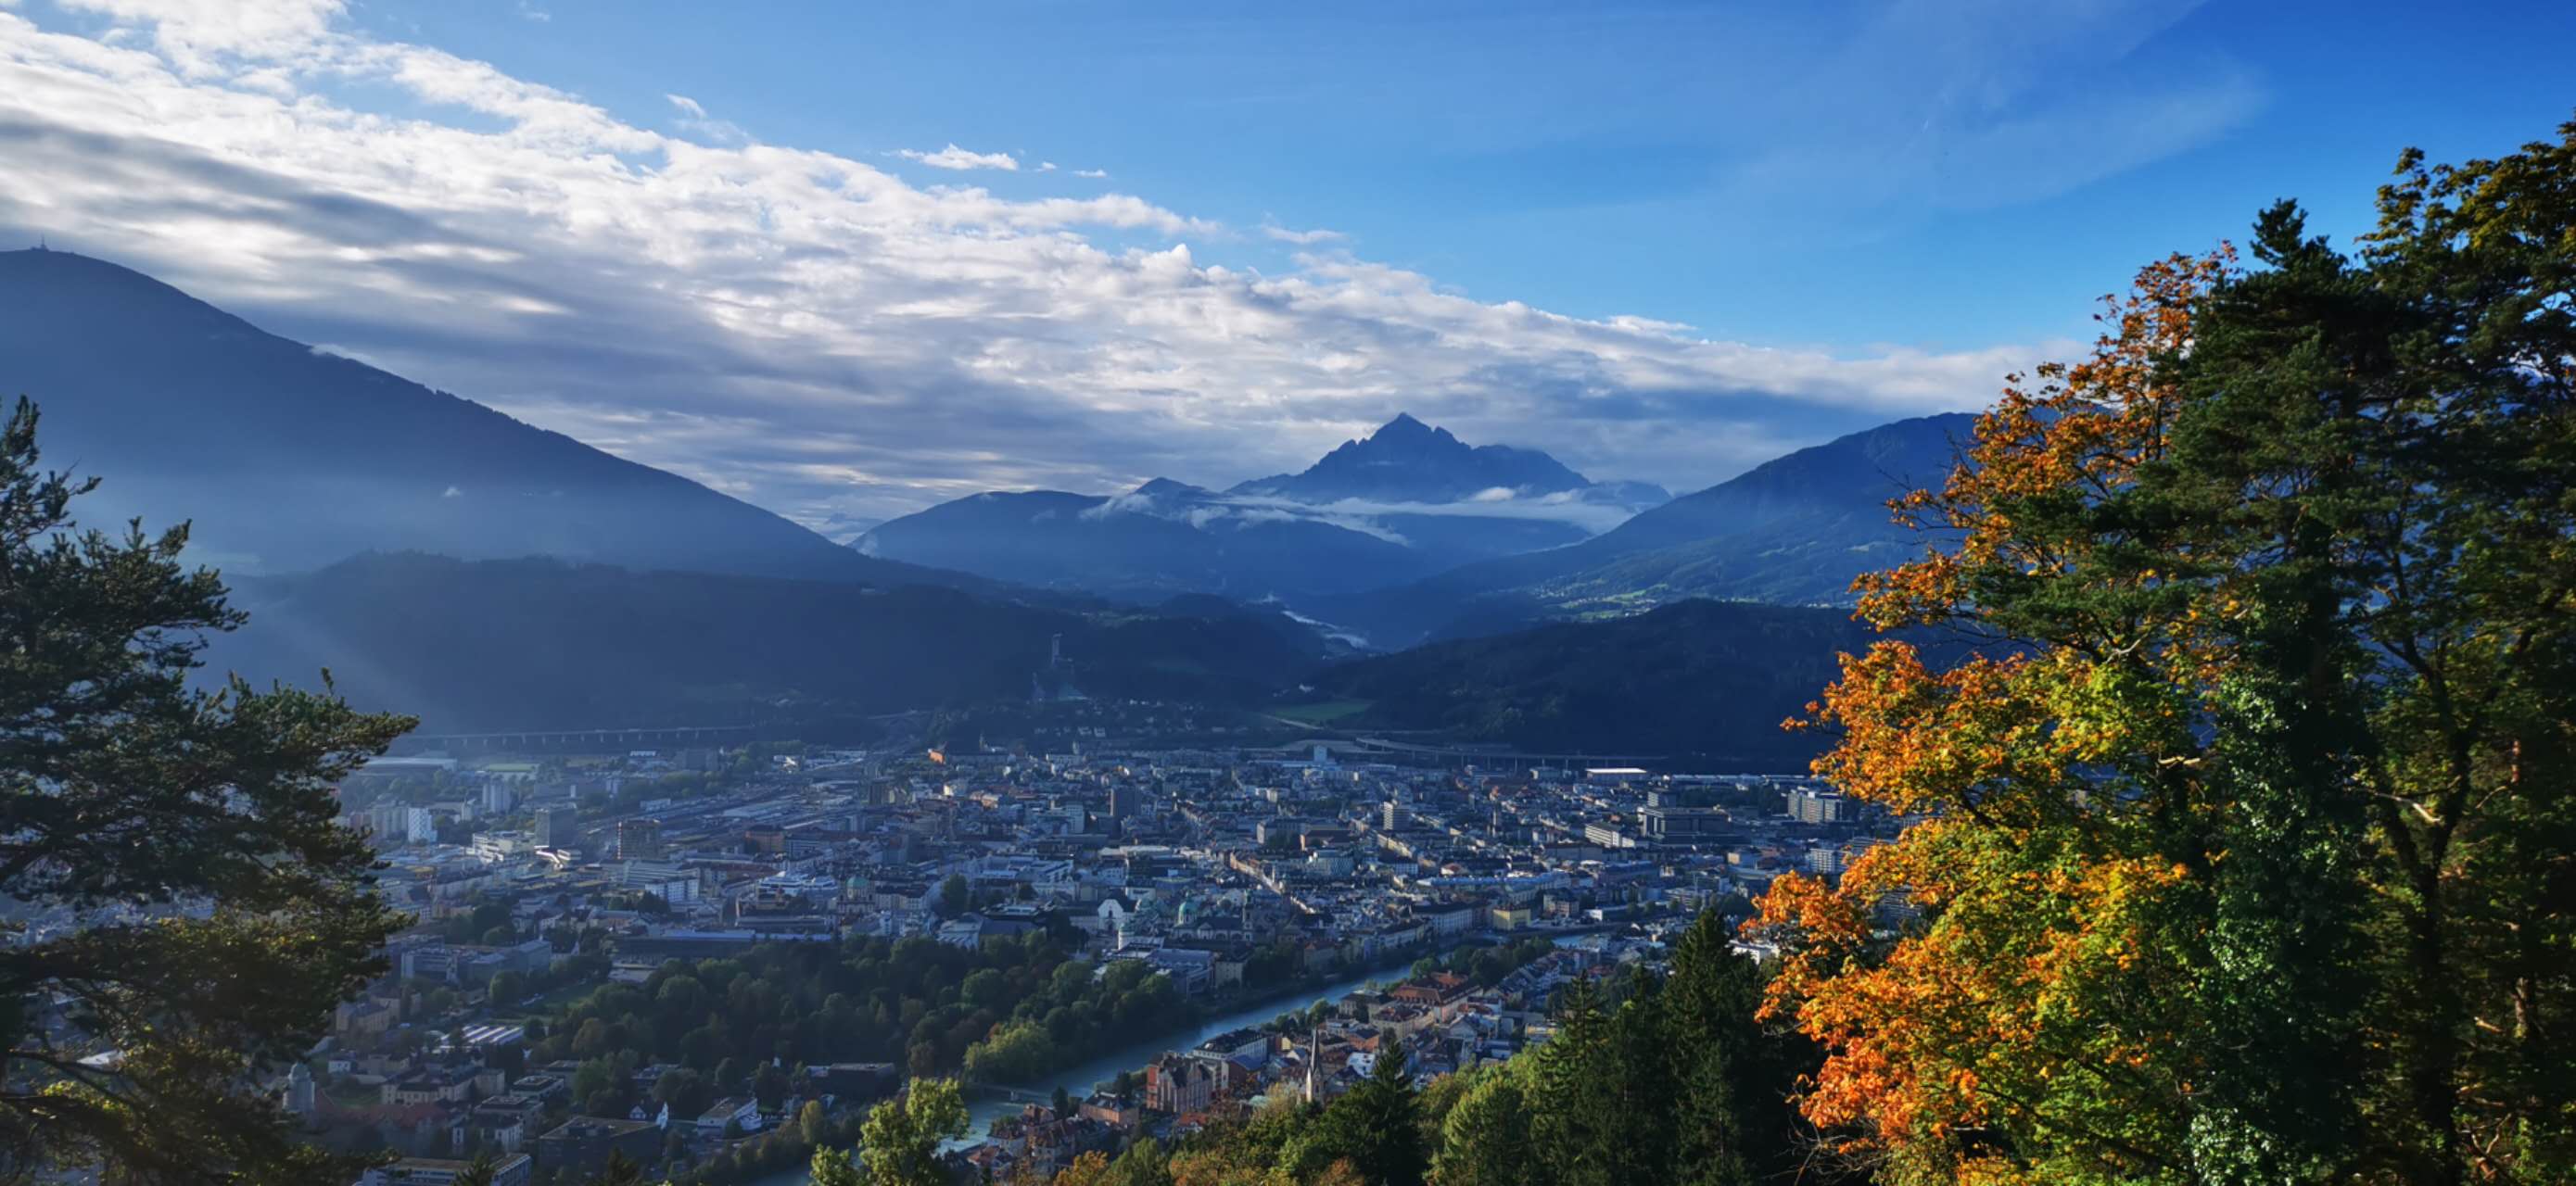 10-2023 Innsbruck, Austria